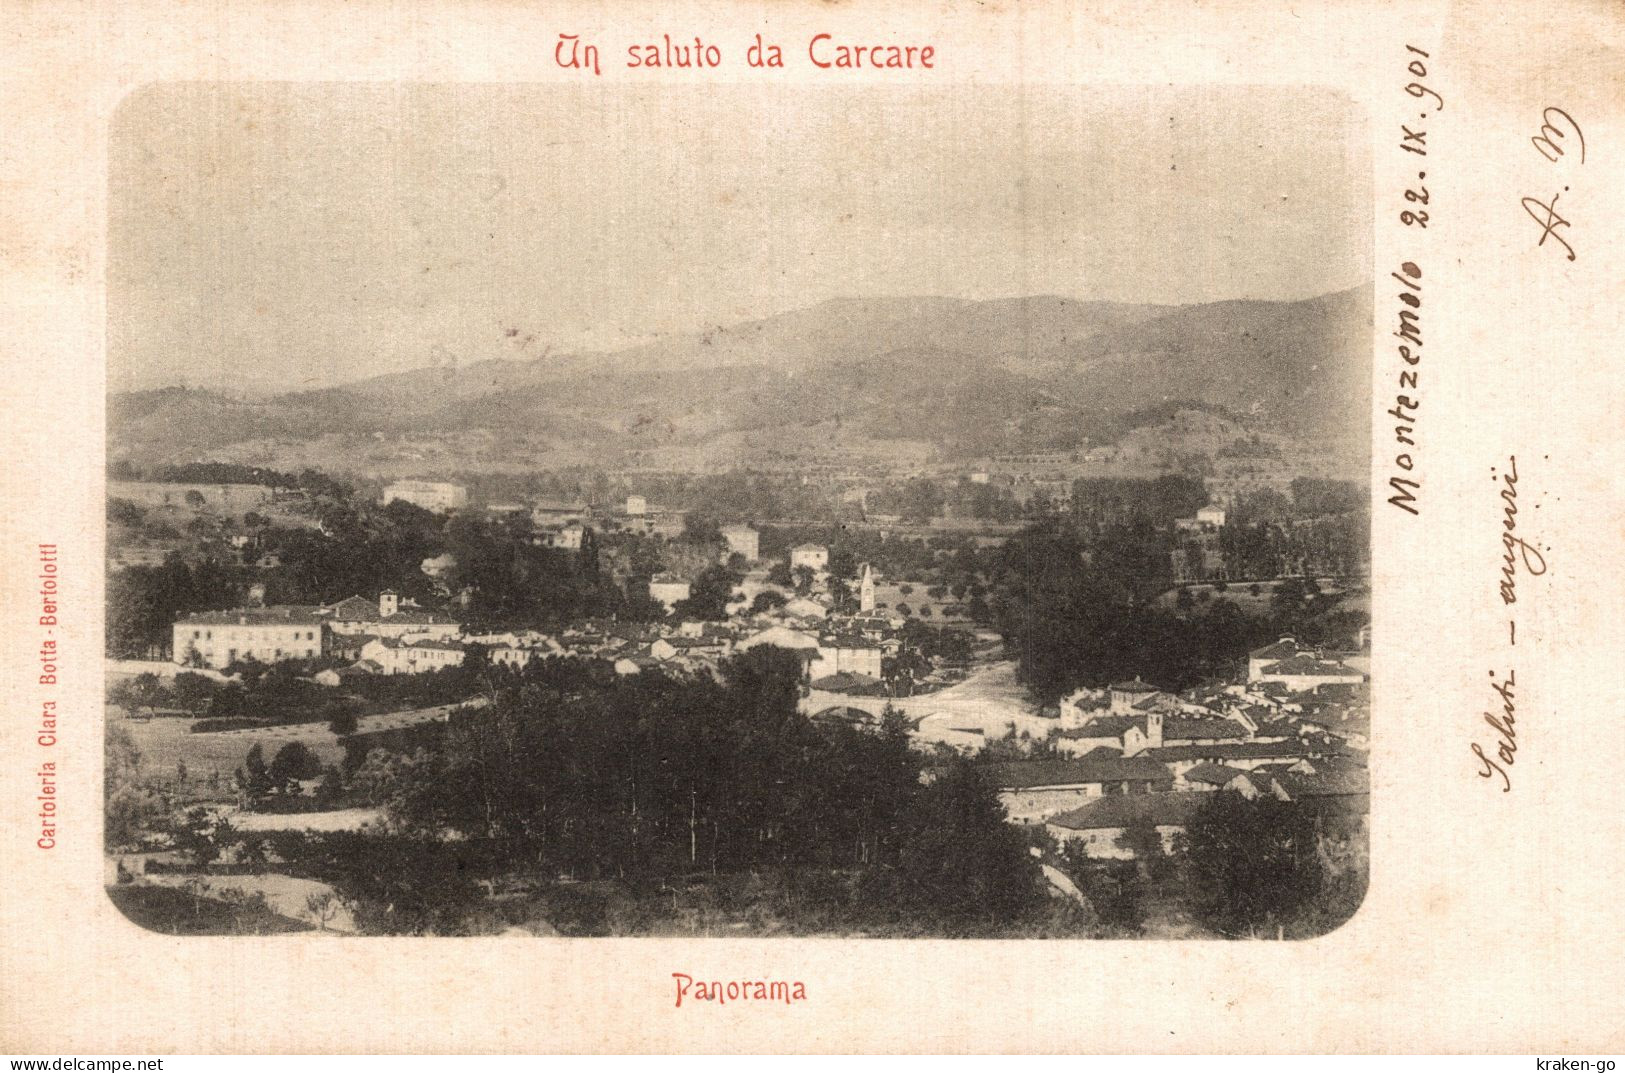 CARCARE, Savona - Panorama - VG - #006 - Savona